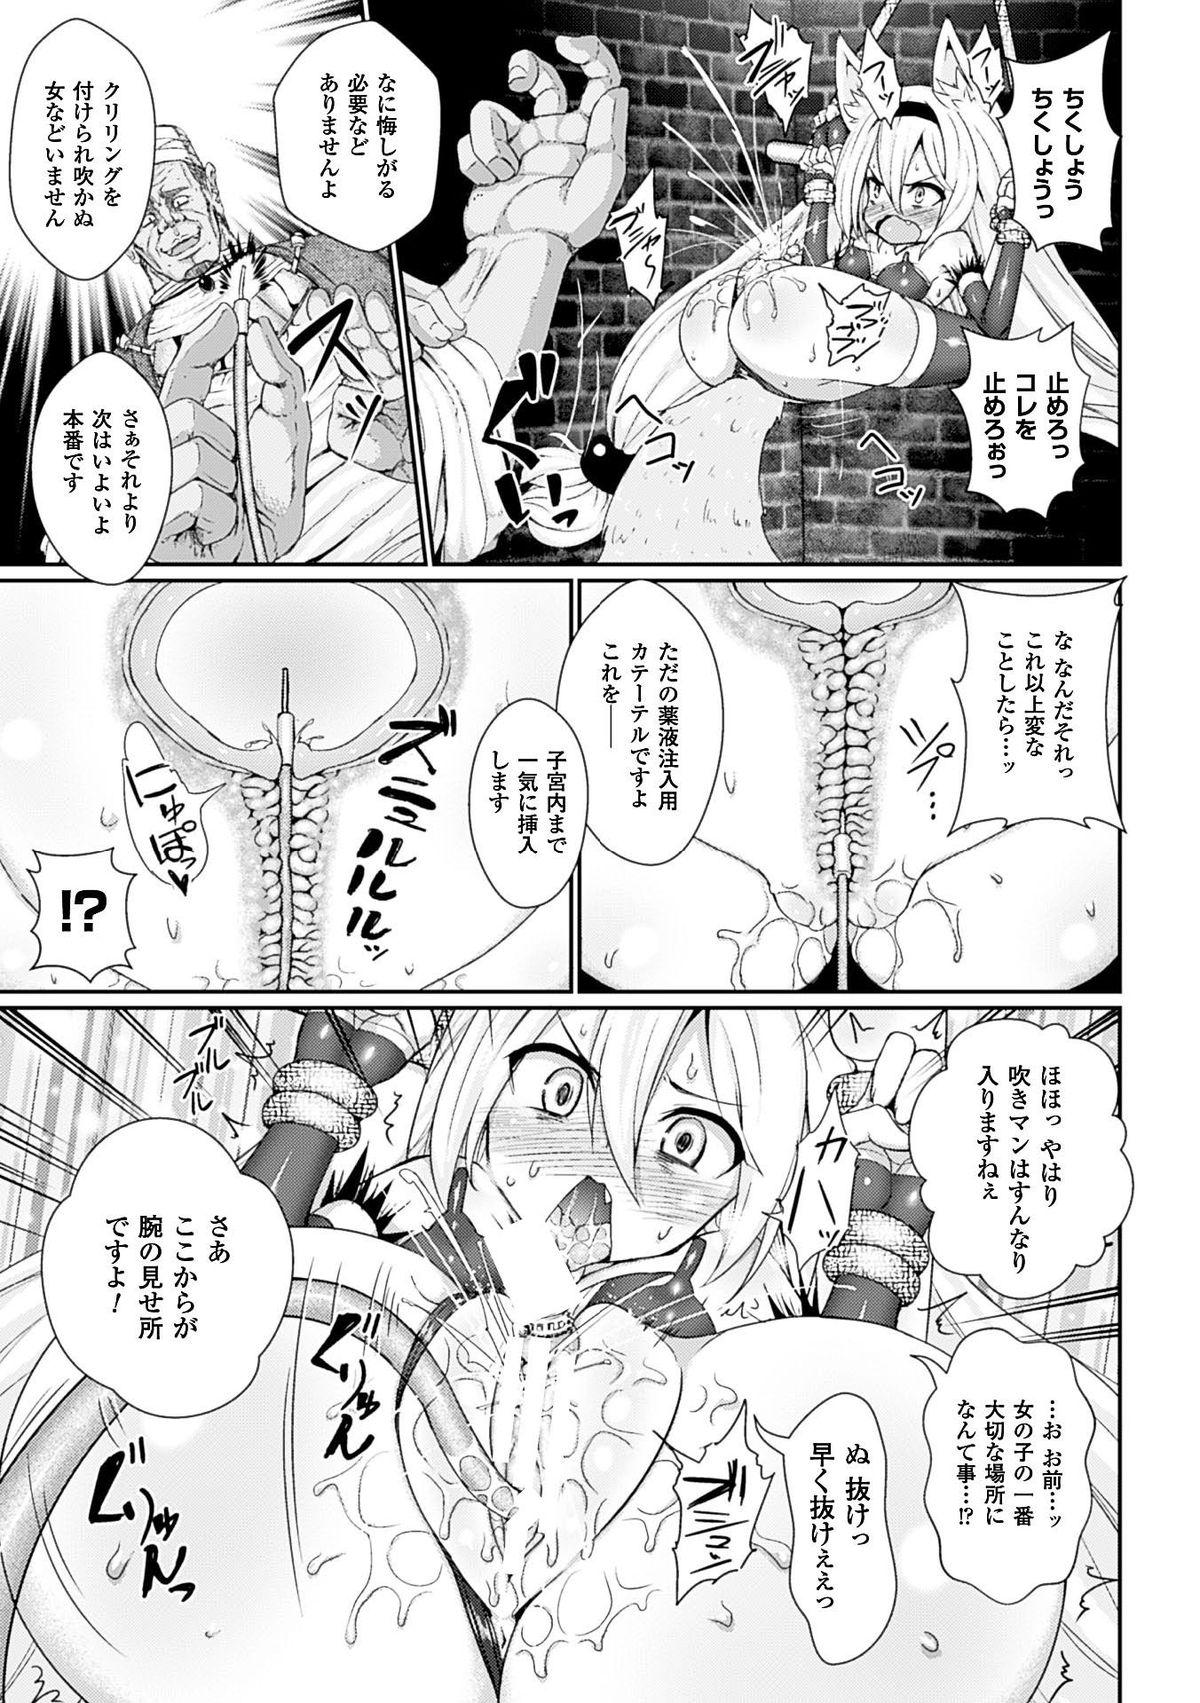 Workout 2D Comic Magazine Aku no Idenshi de Nakadashi Haramase! Vol. 1 Teenporno - Page 10